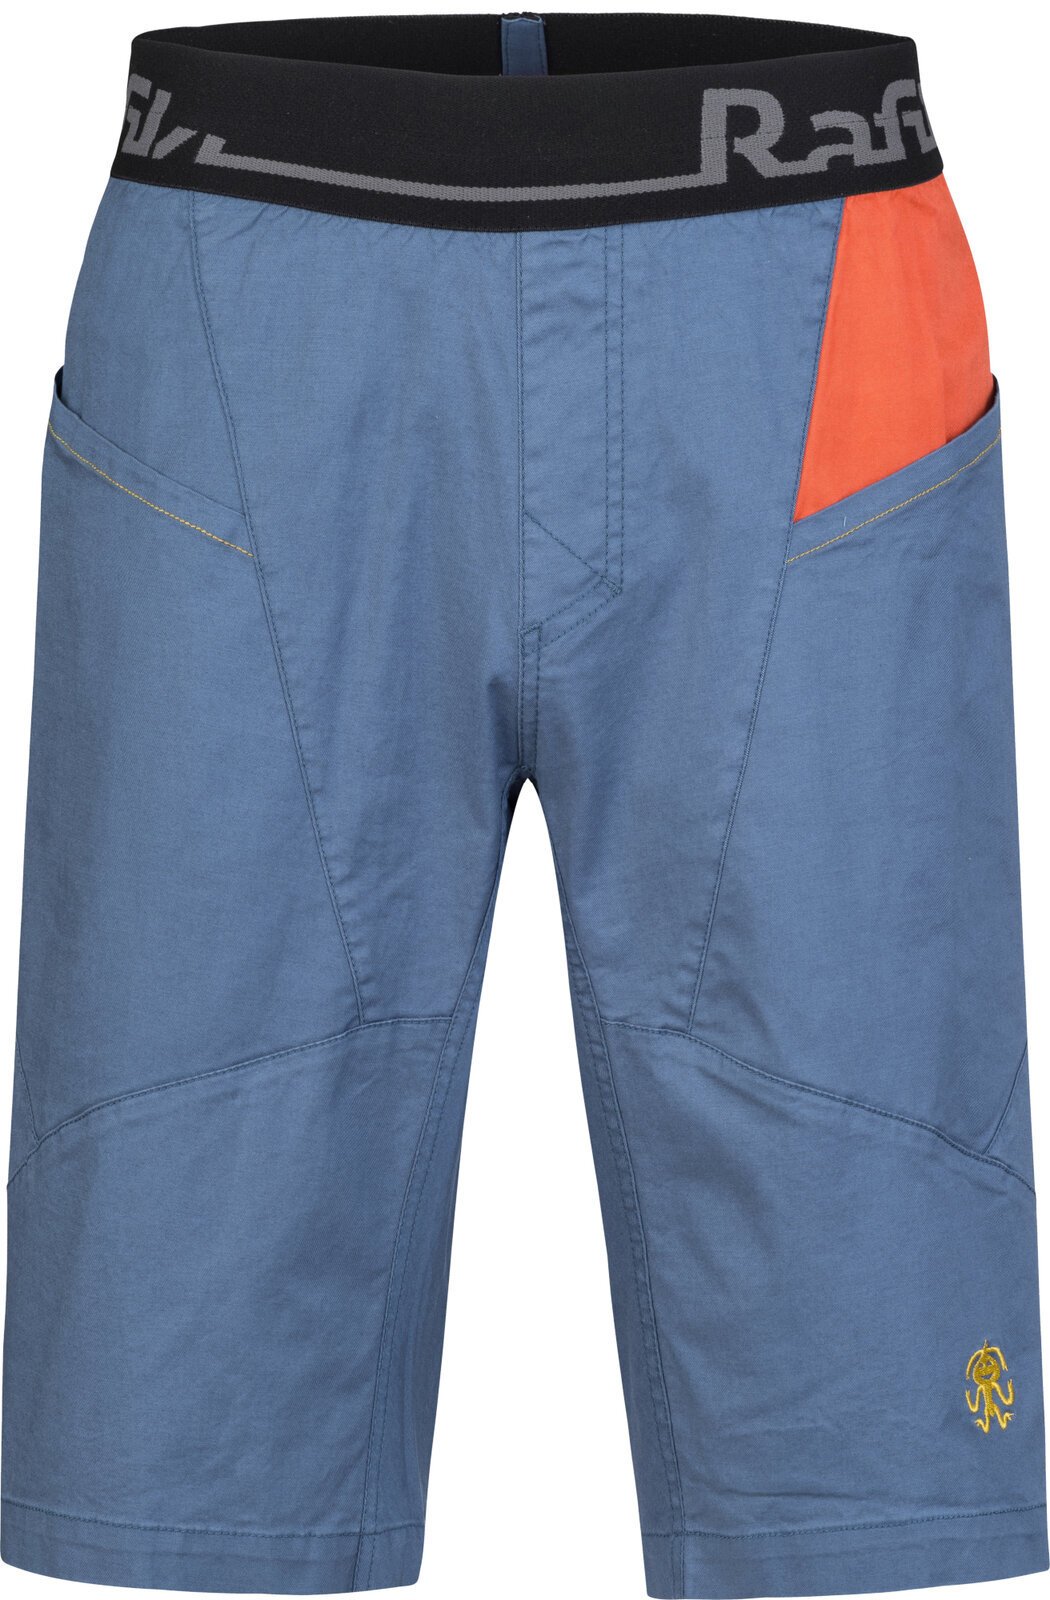 Σορτς Outdoor Rafiki Megos Man Shorts Ensign Blue/Clay XS Σορτς Outdoor